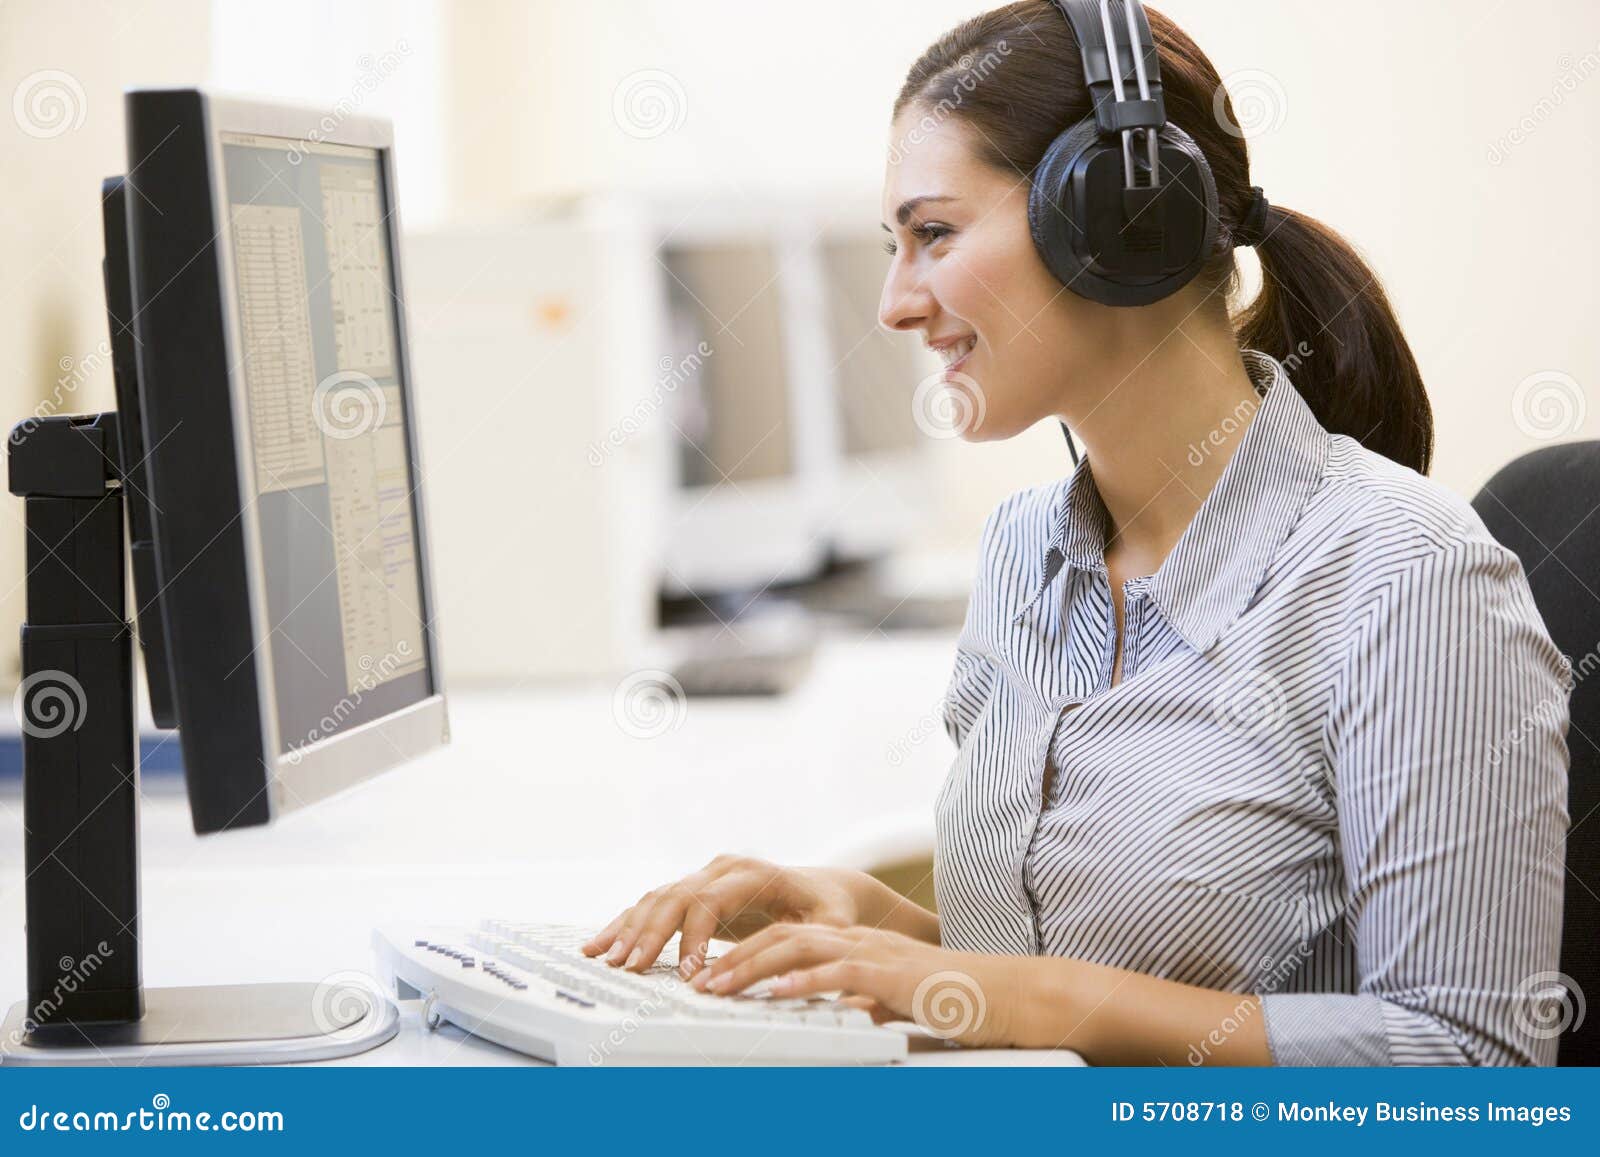 woman wearing headphones in computer room typing